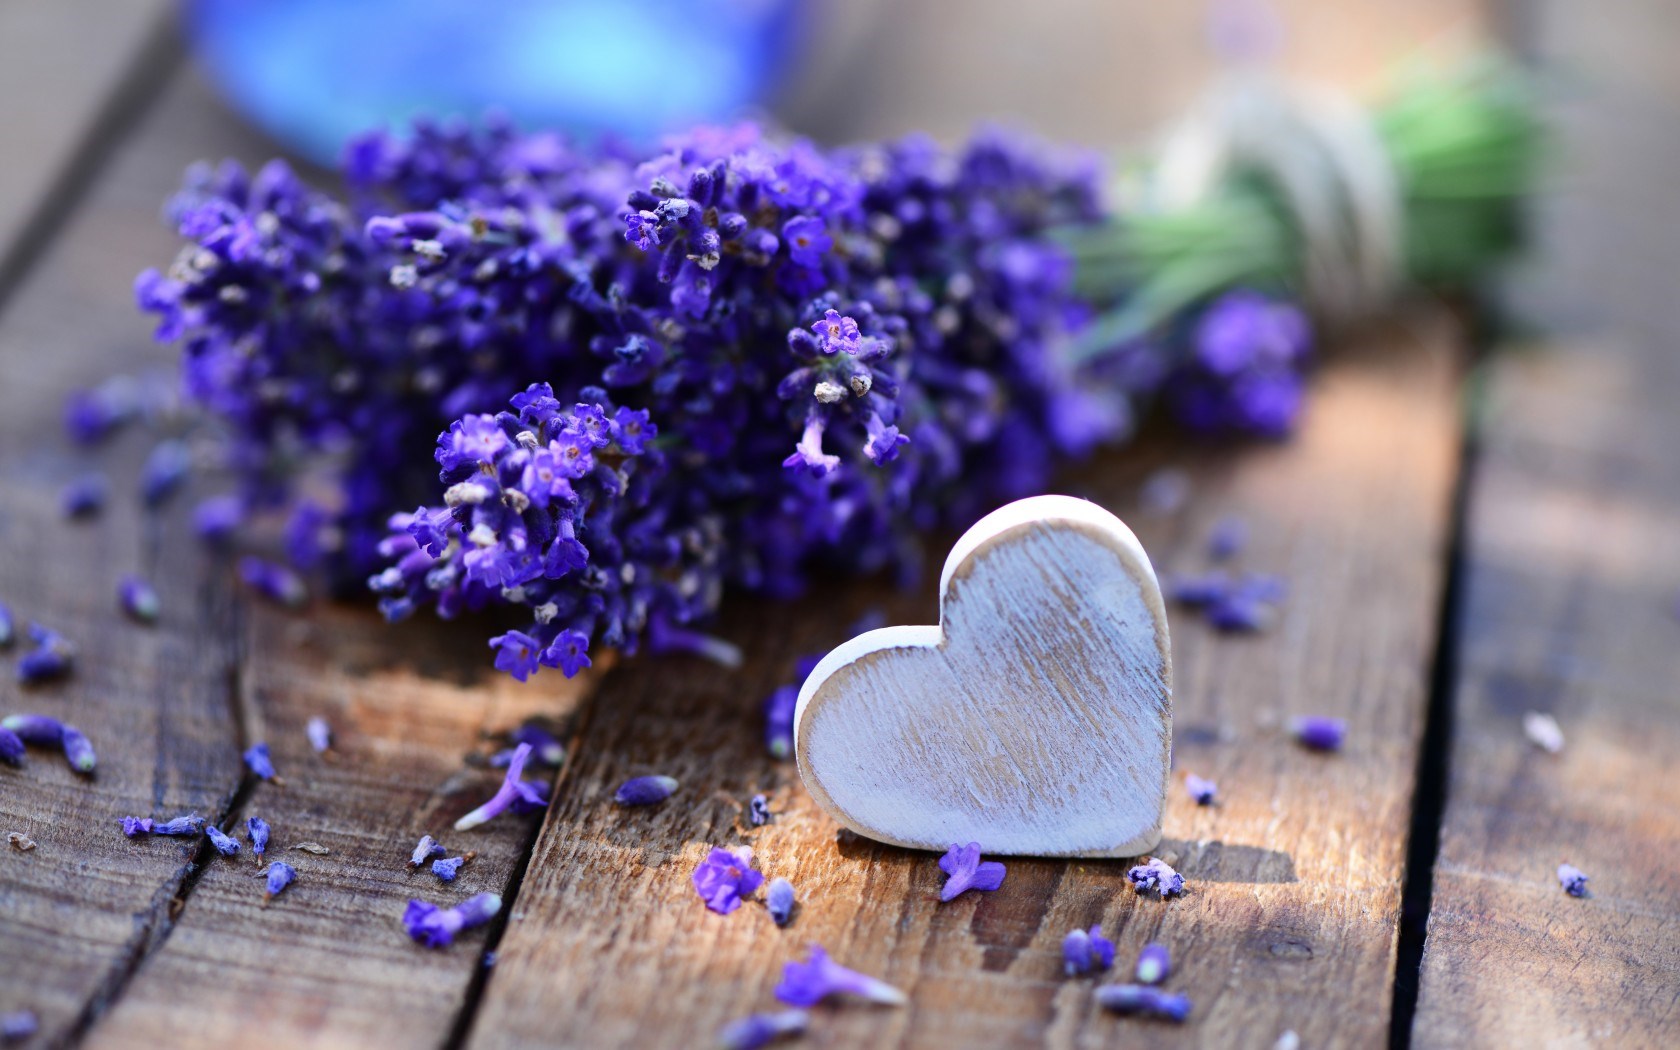 hoa lavender có màu tím mang ý nghĩa thủy chung, chân thành và mùi hương thơm ngát sẽ làm rung động mọi trái tim